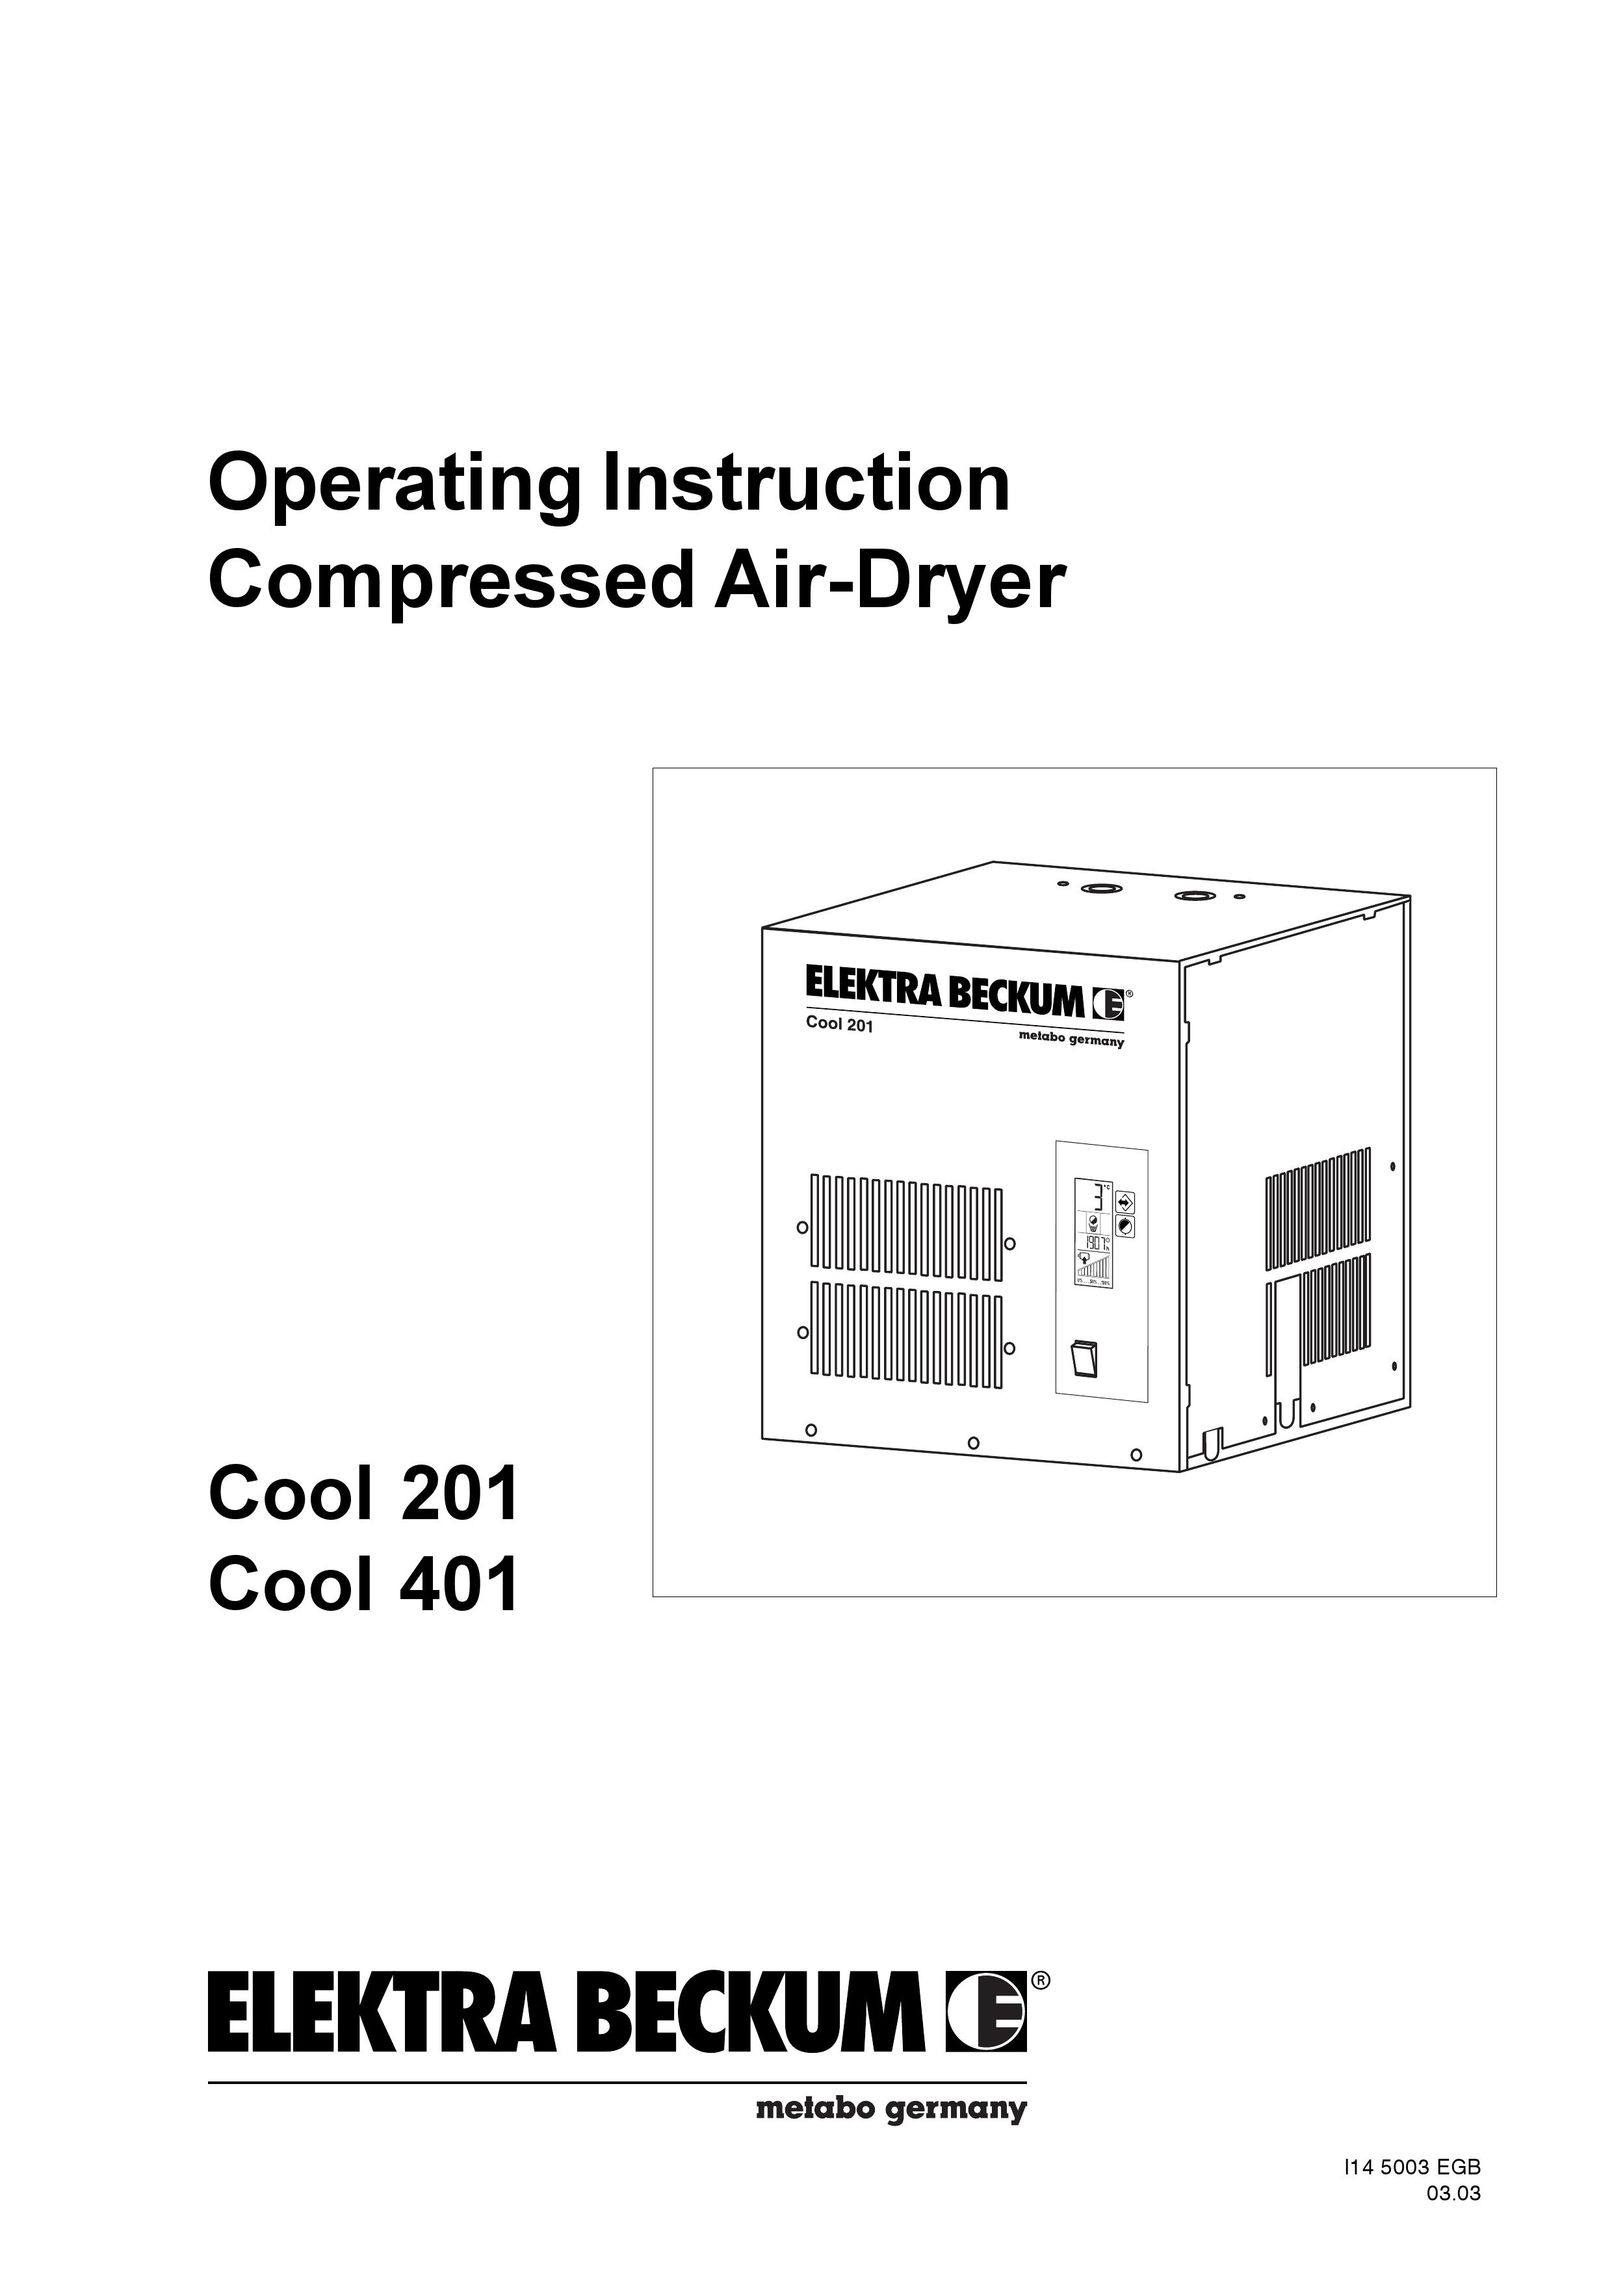 Elektra Beckum Cool 401 Air Compressor User Manual